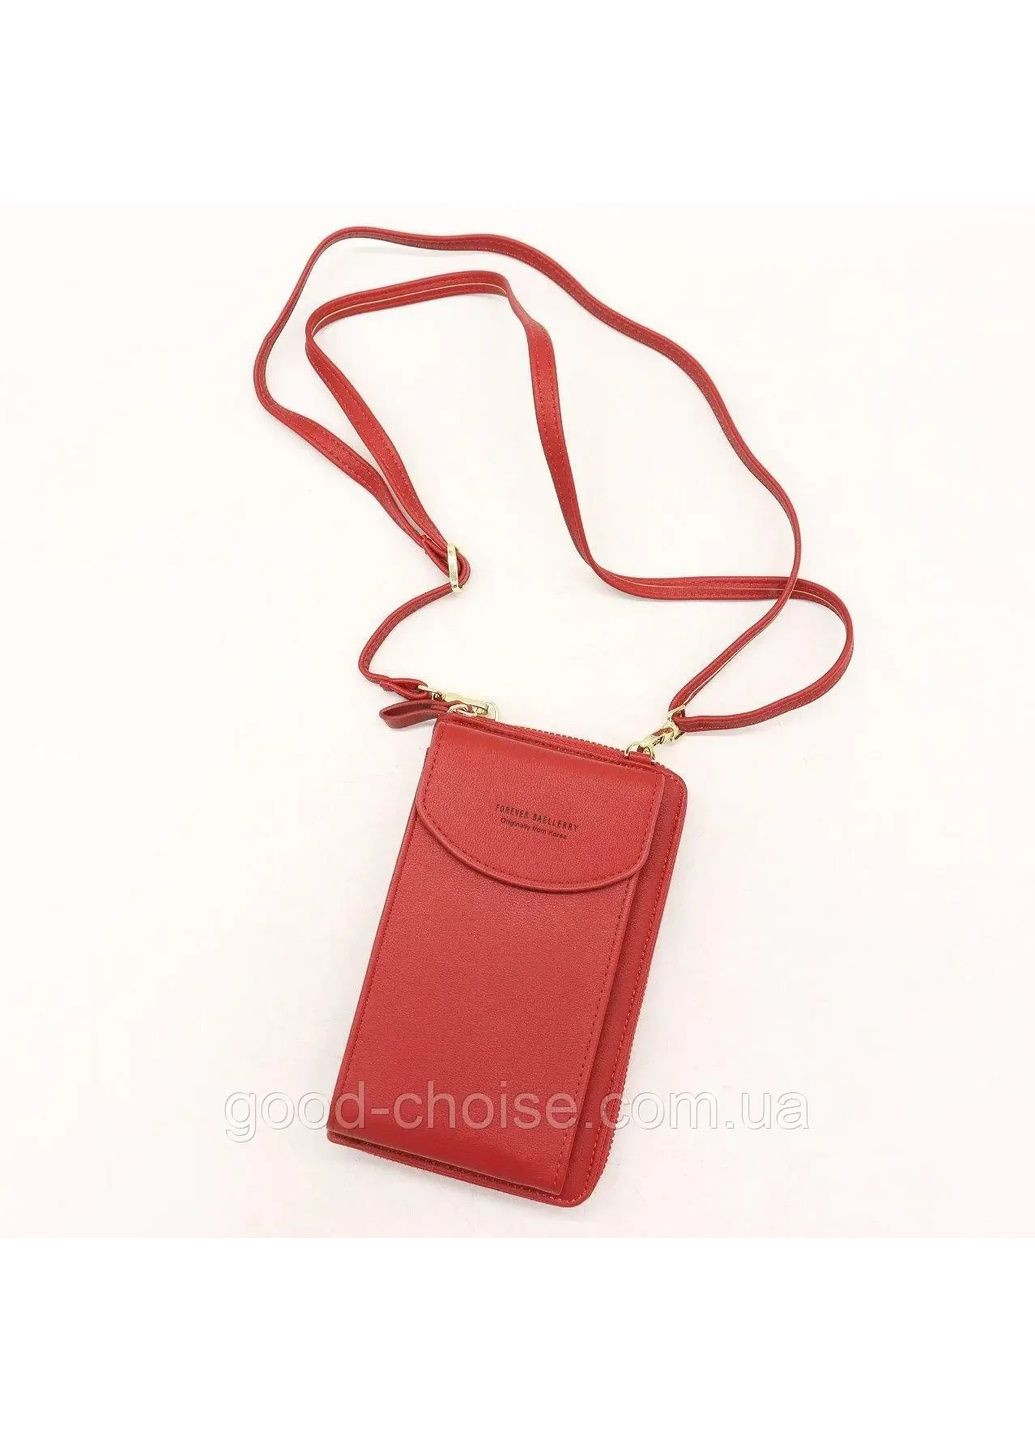 Сумка для телефона через плечо FOREVER LOVELY, женская сумка кошелек клатч женский, сумка чехол web No Brand (289870019)